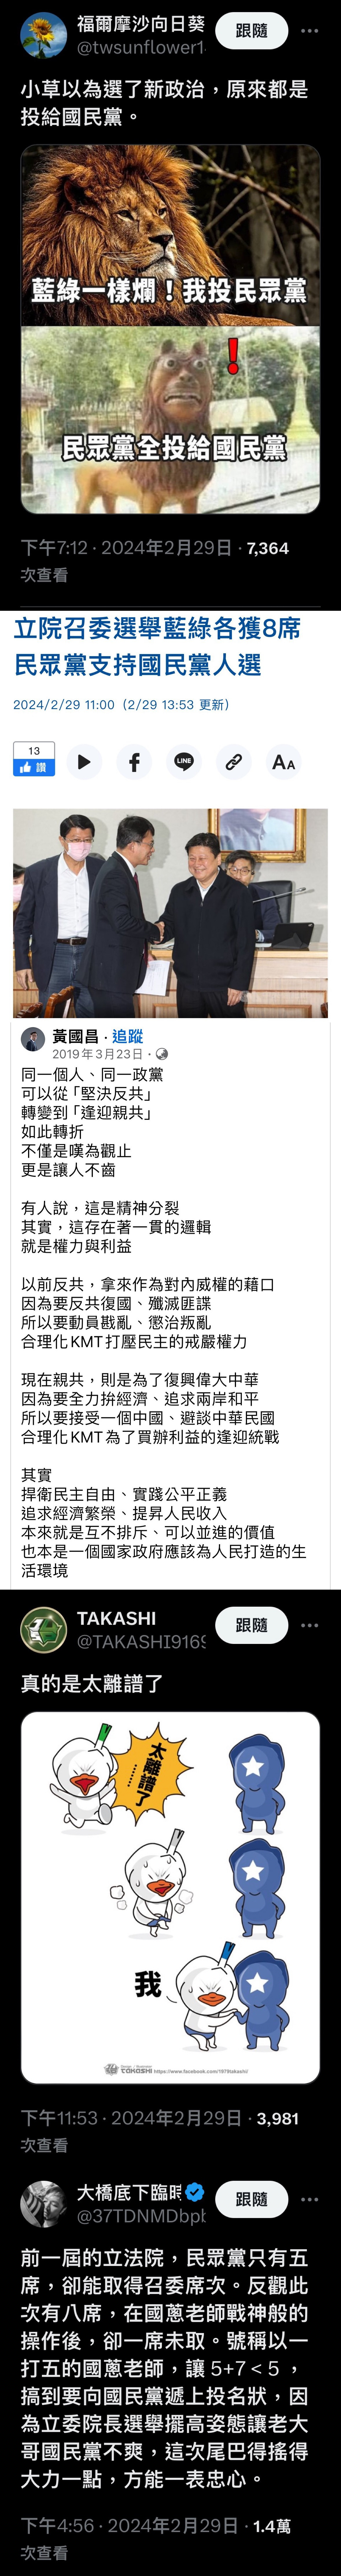 [新聞] 黃國昌與傅崐萁通話致謝禮讓召委 民眾黨